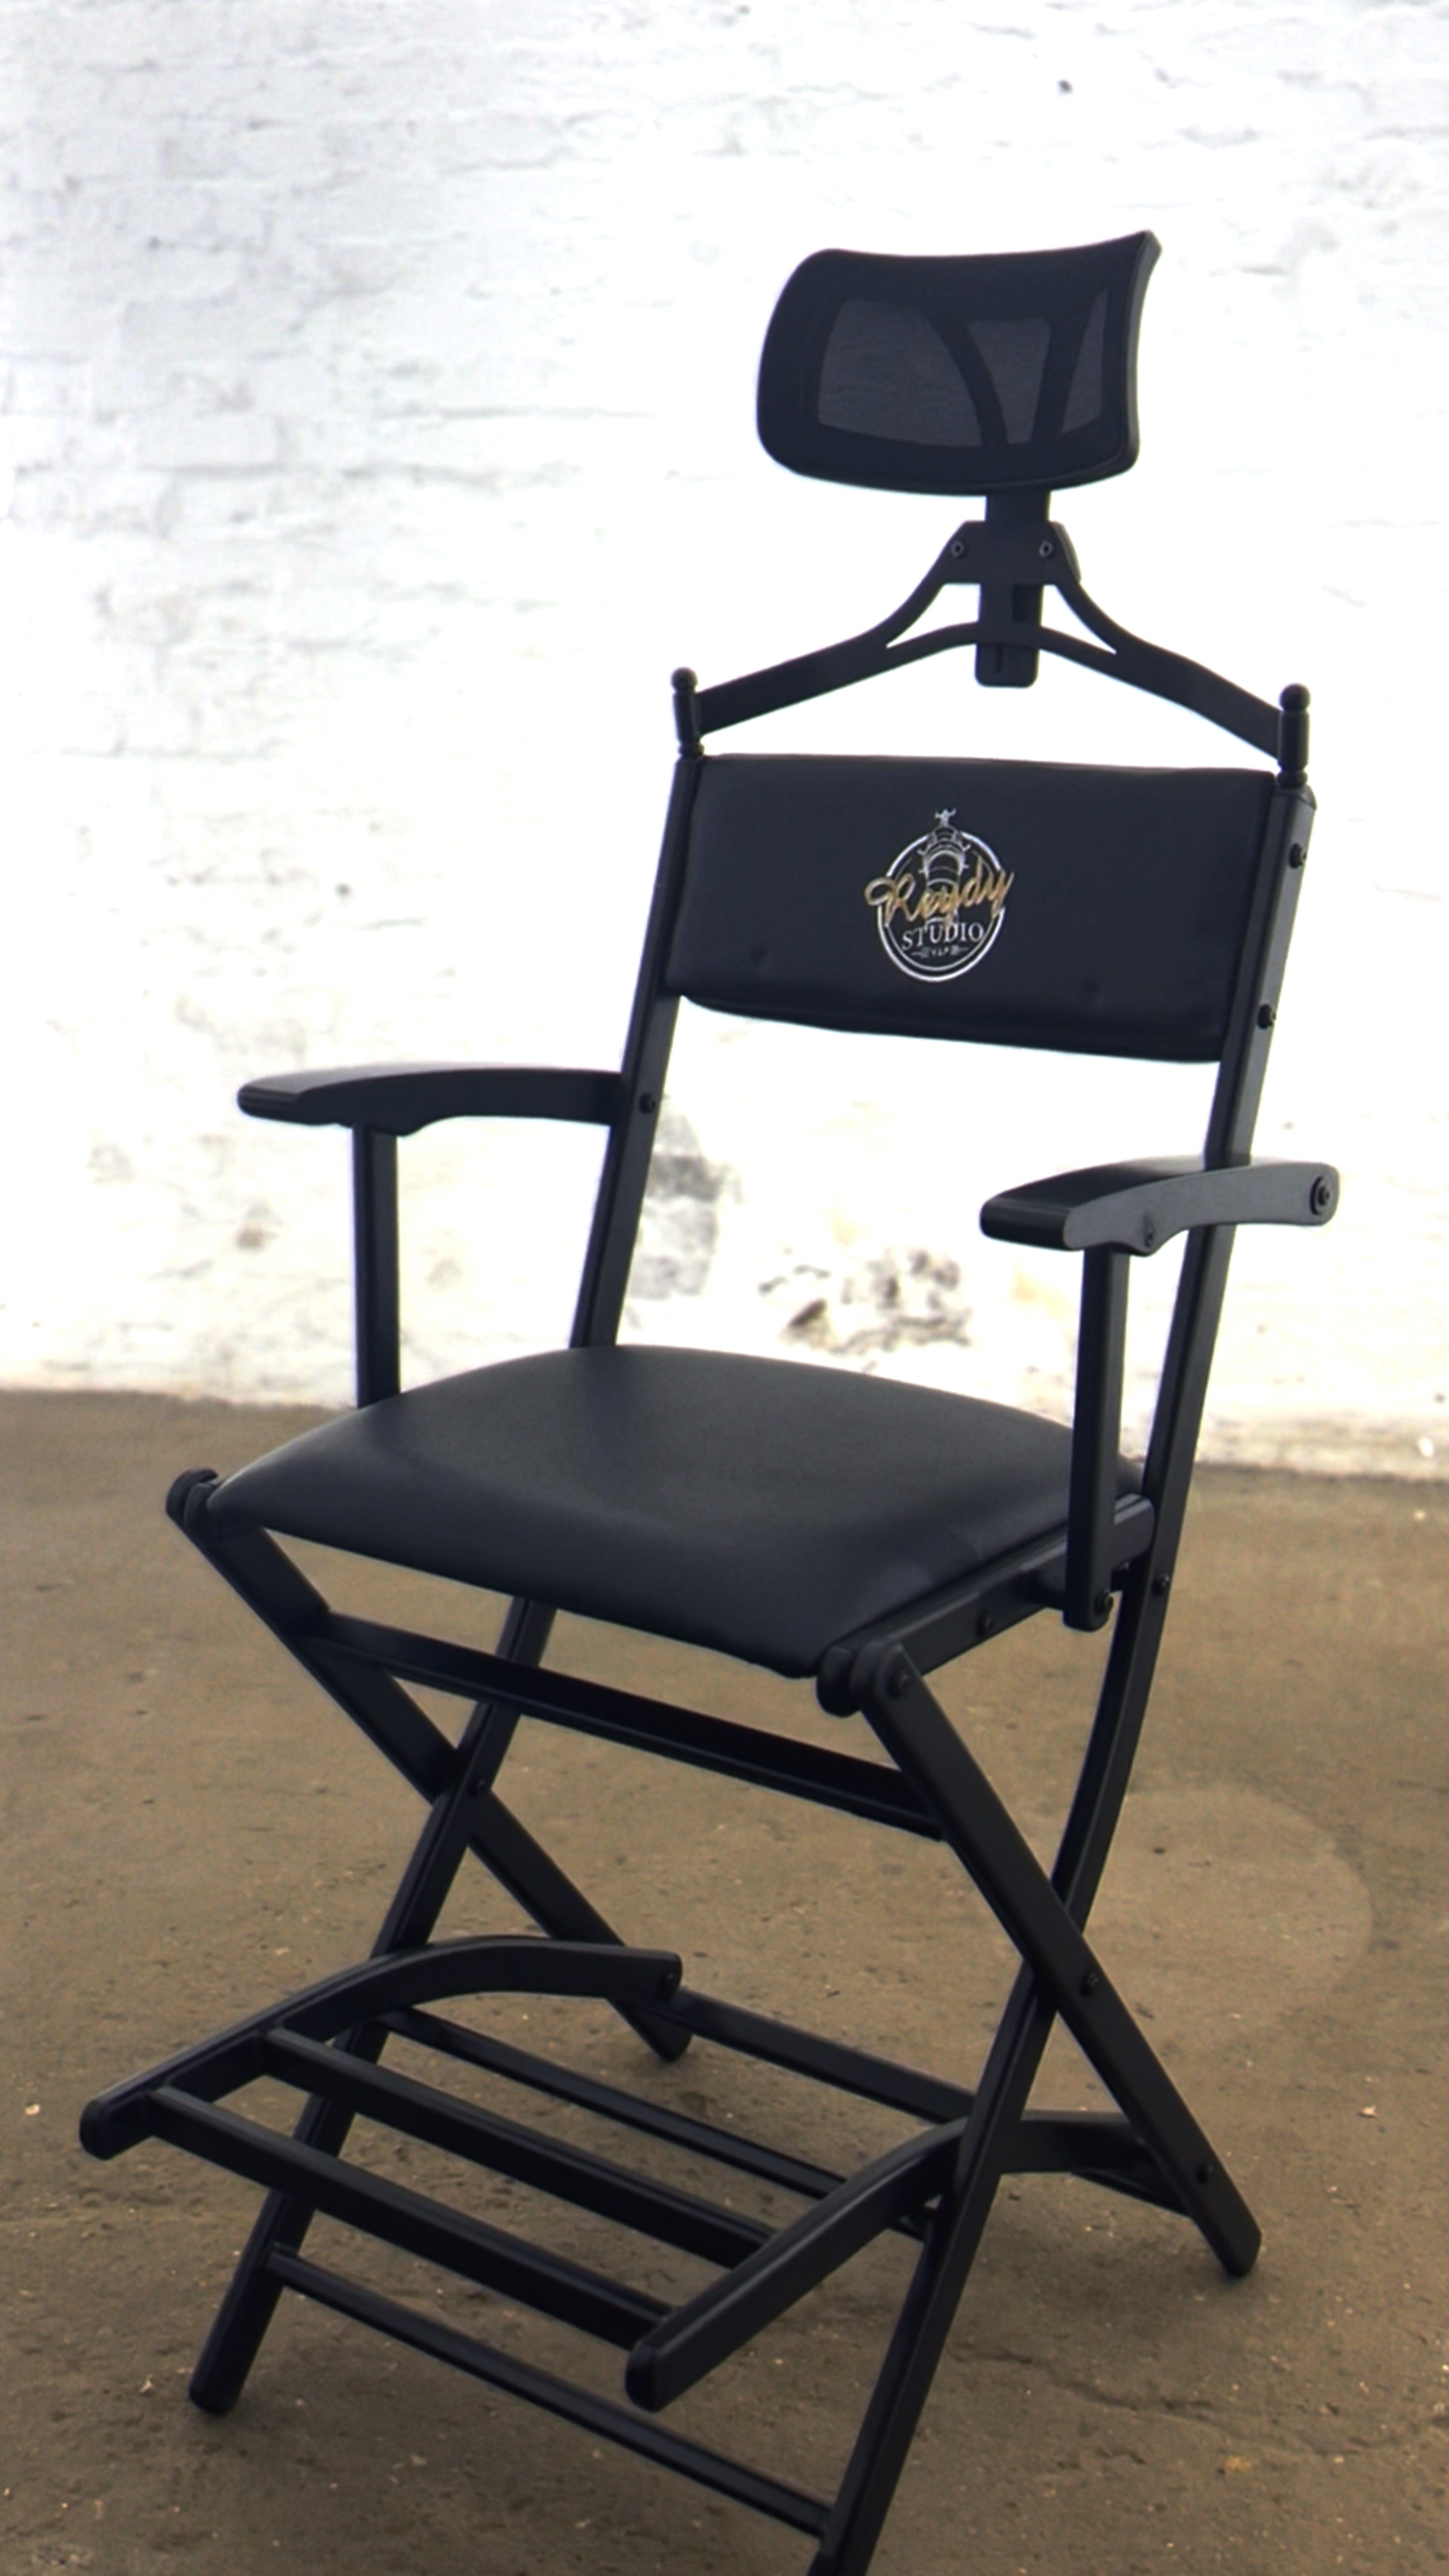 John Barber & Sons Inkl. dein Logo auf der Rückenlehne INNEN Mobiler Barber Stuhl inkl. Kopfstütze